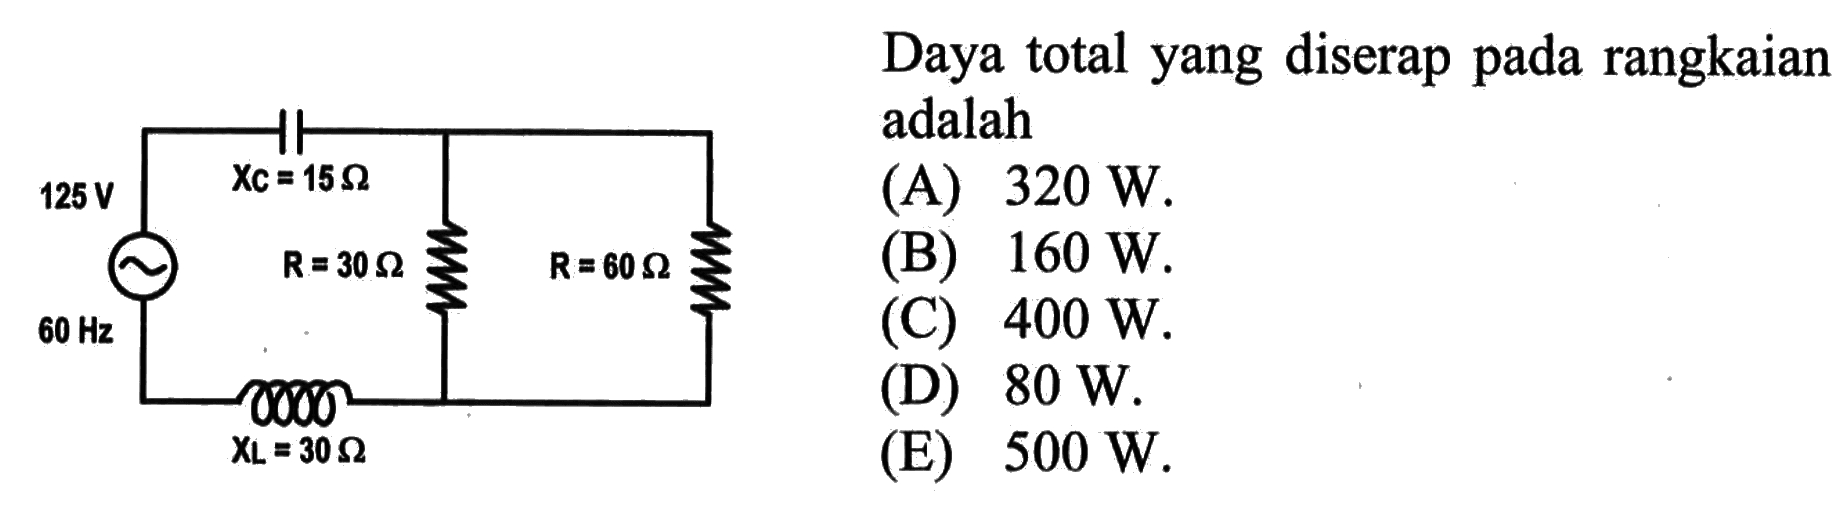 Daya total yang diserap pada rangkaian125 V, 15 Ohm, 30 Ohm, 30 Ohm(A) 320 W(B) 160 W(C) 400 W(D) 80 W(E) 500 W 